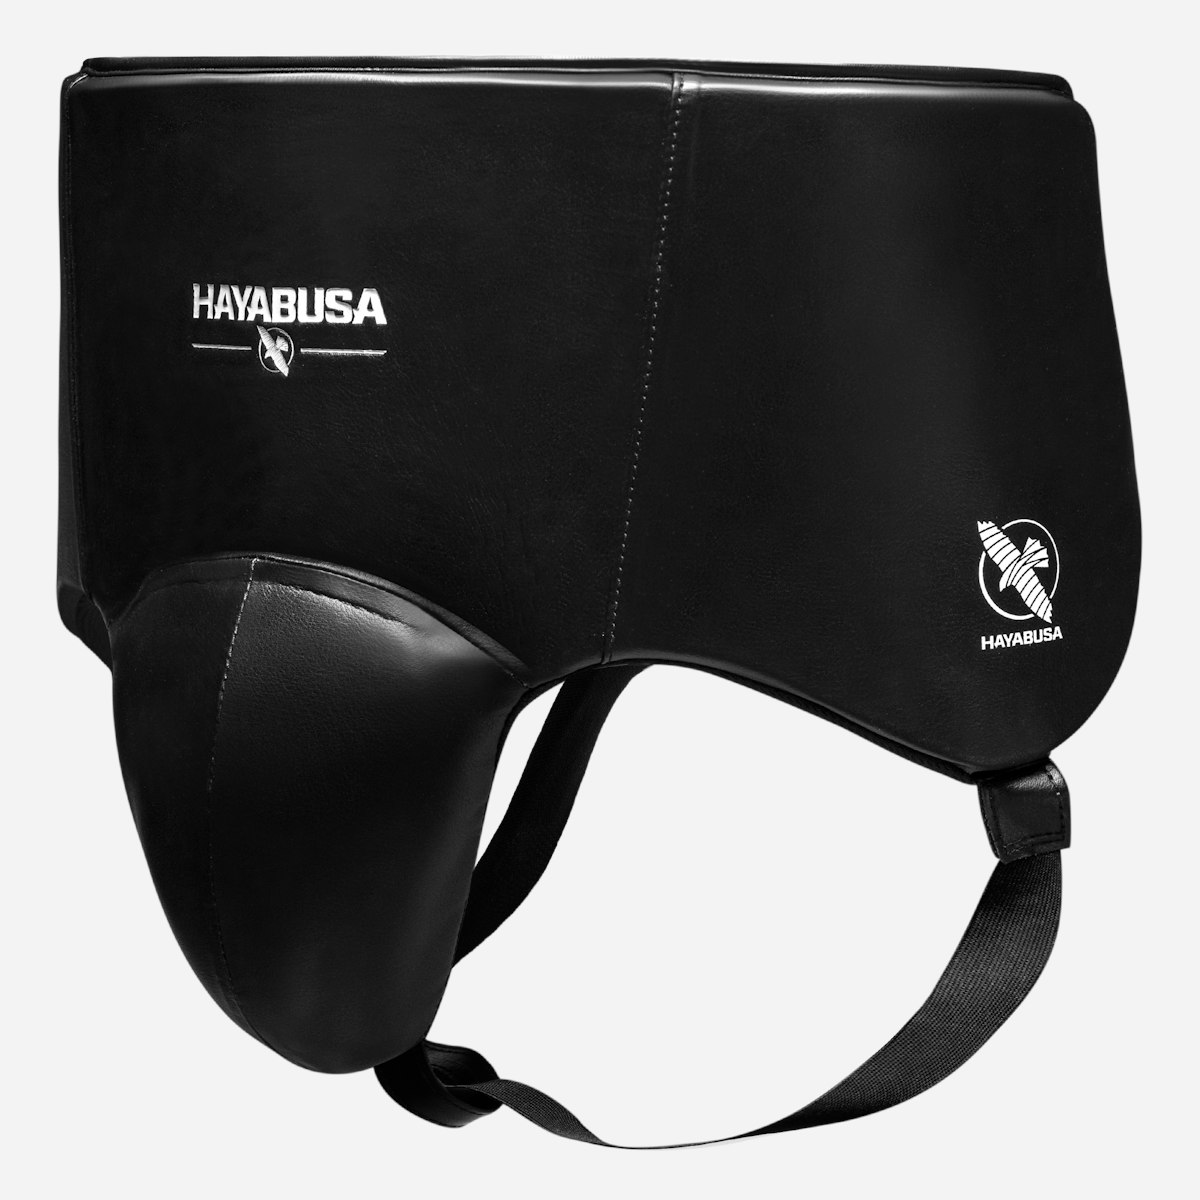 Hayabusa Pro Boxing Groin Protector